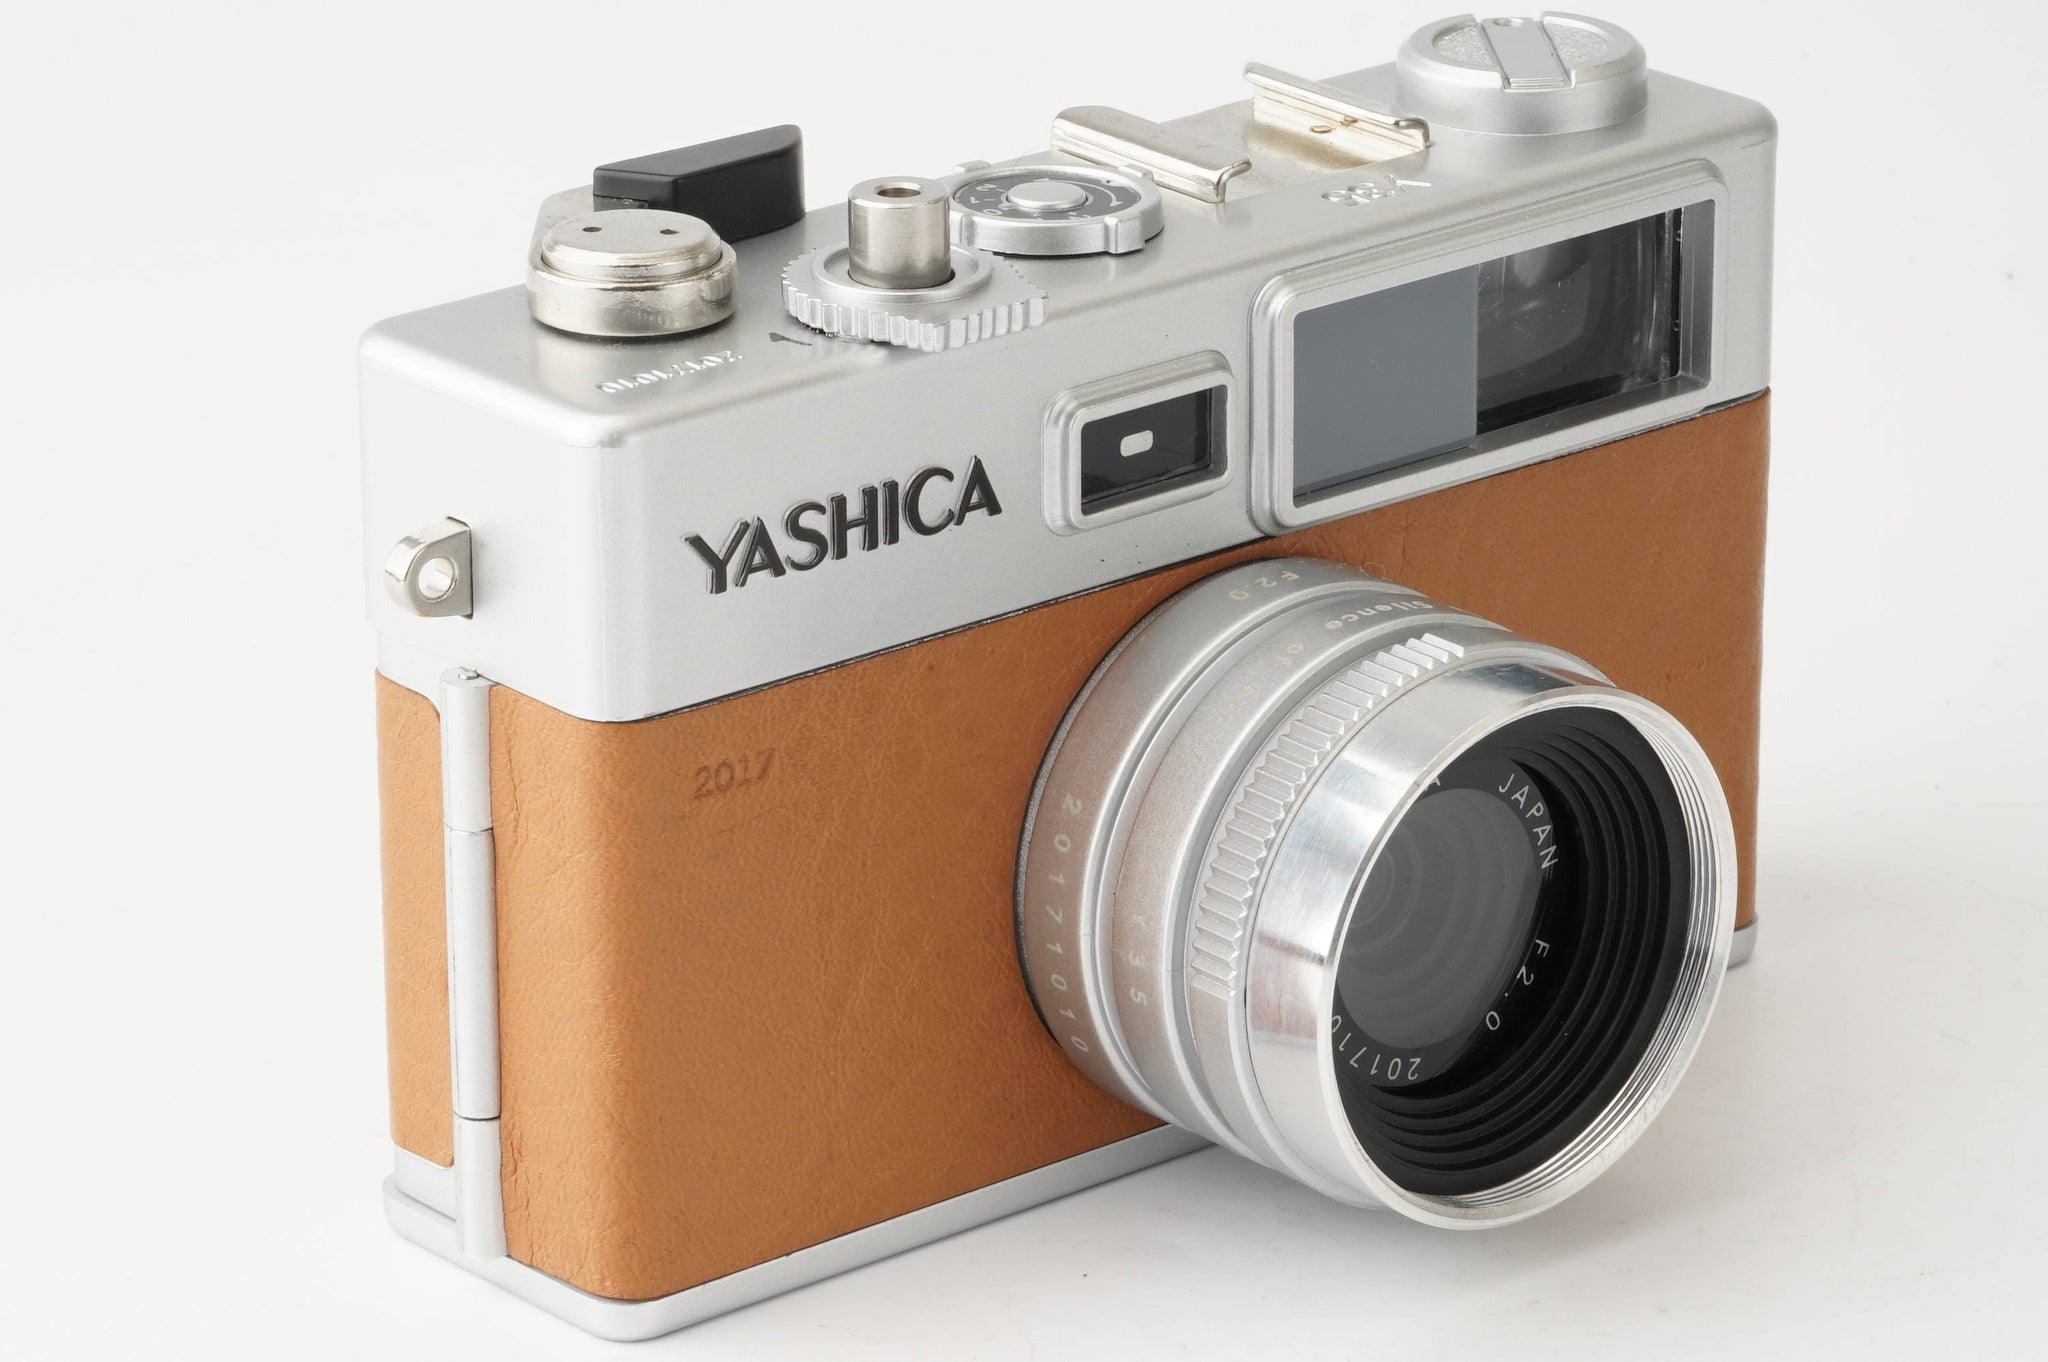 ヤシカ Yashica digiFilm camera y35 / YASHICA F2.0 / デジフィルム6